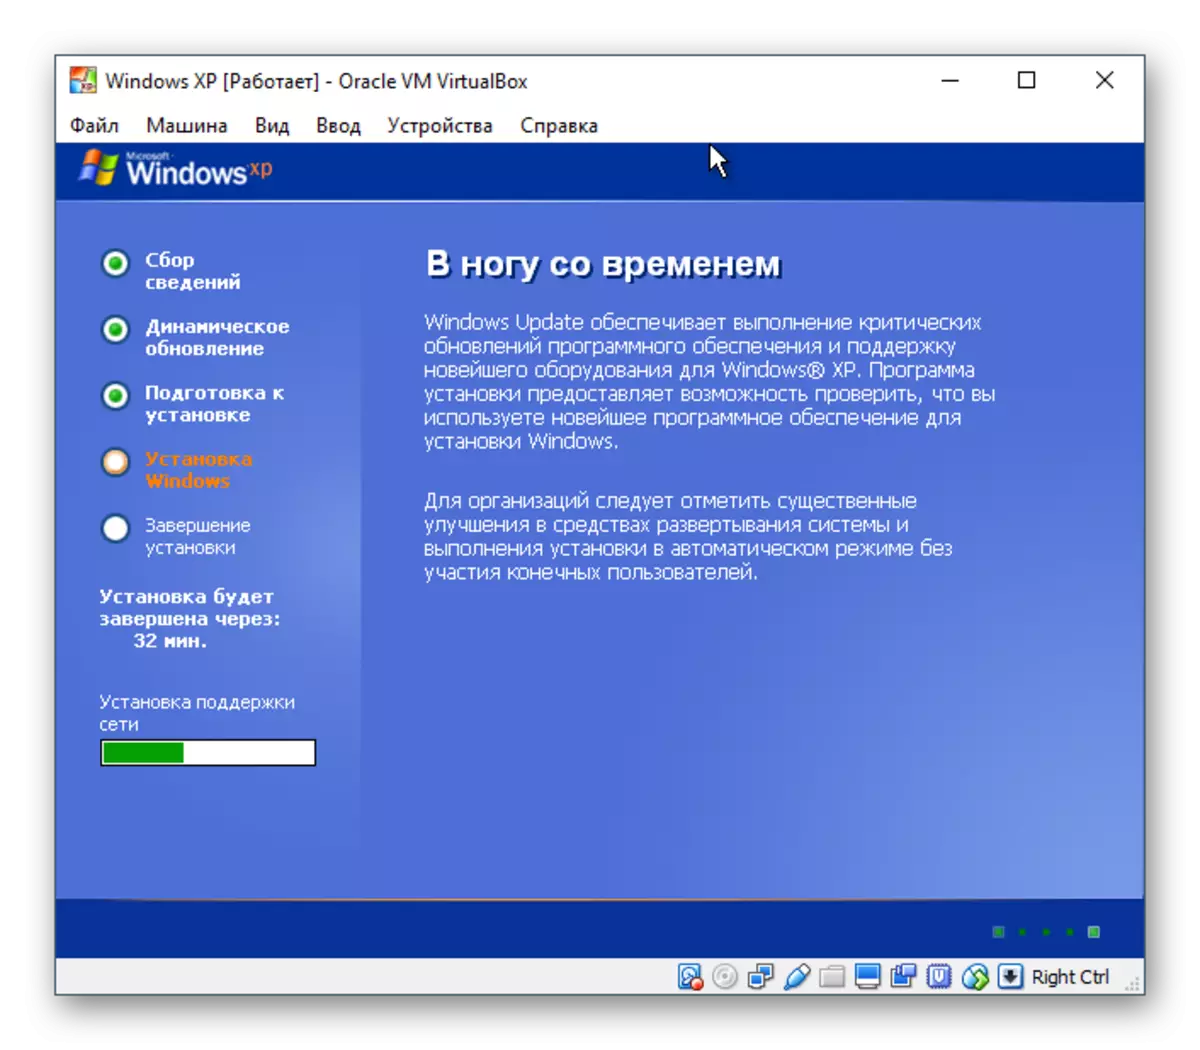 การตั้งค่าเครือข่าย Windows XP ใน VirtualBox